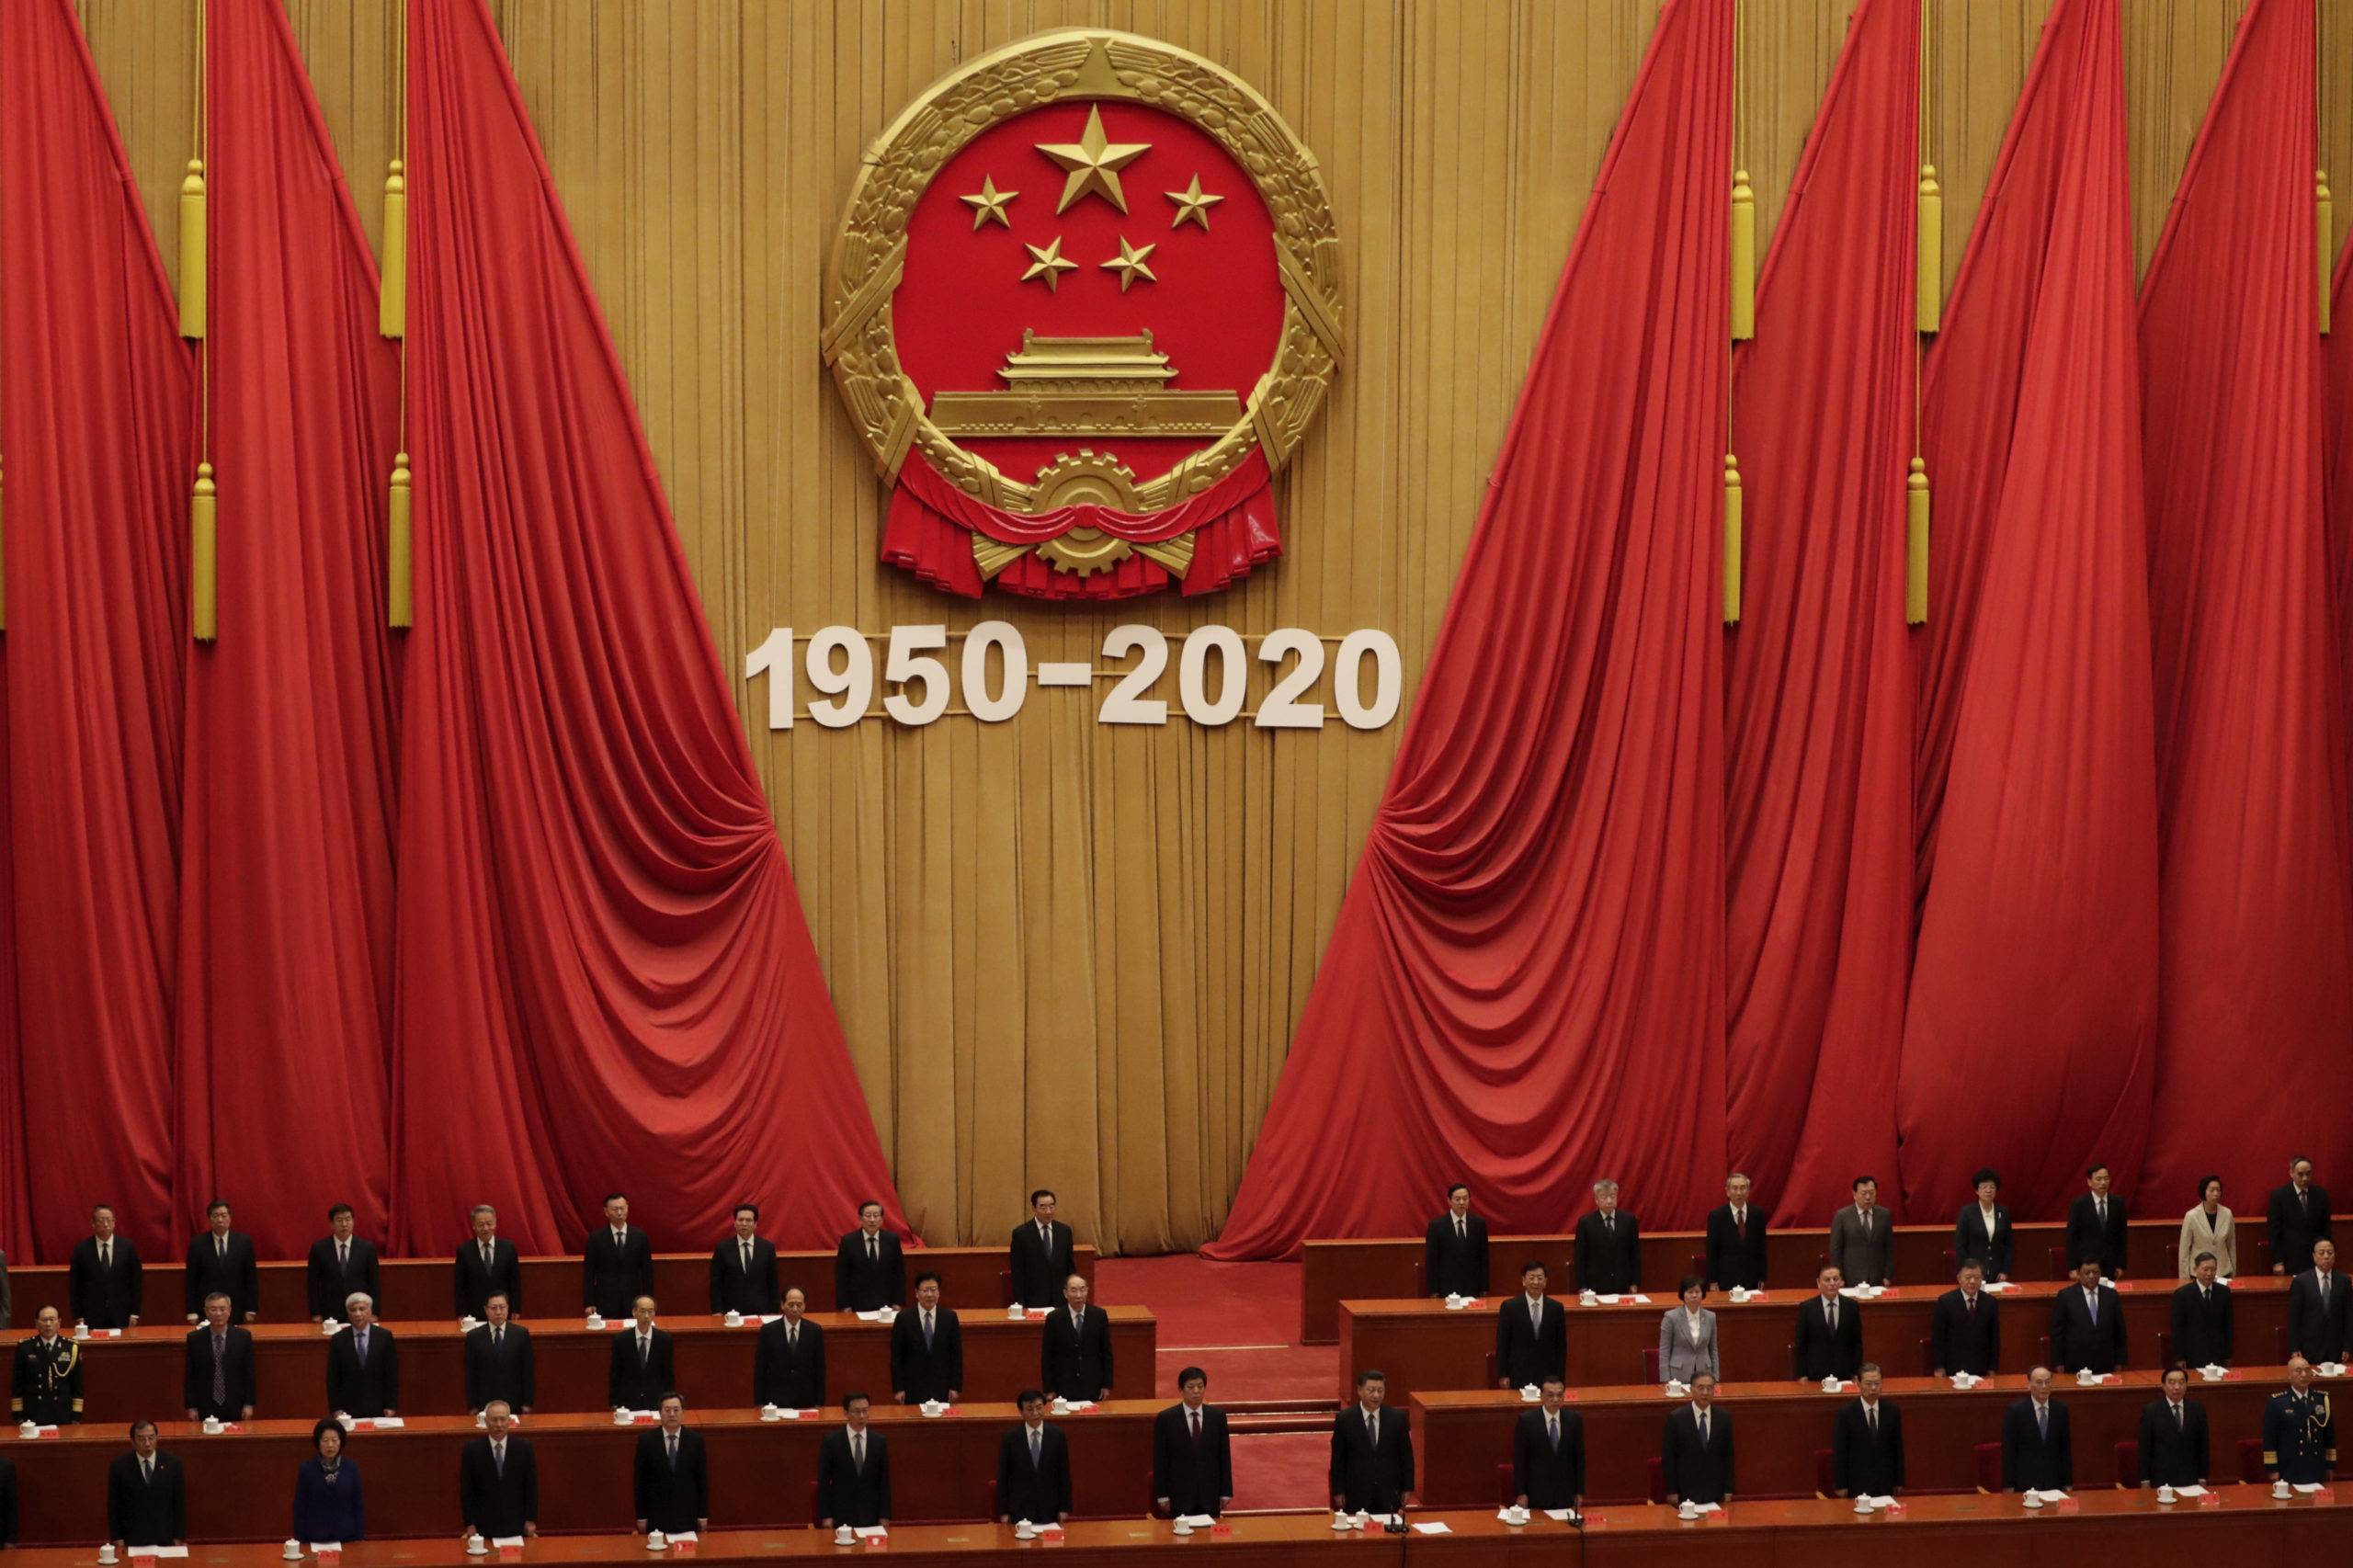 Le président chinois Xi Jinping, en bas au centre, et des hauts fonctionnaires interprètent l'hymne national lors de la conférence commémorant le 70e anniversaire de l'entrée de la Chine dans la guerre de Corée de 1950-53, dans le Grand Hall du peuple à Pékin, le vendredi 23 octobre 2020 (c) Sipa AP22505772_000006